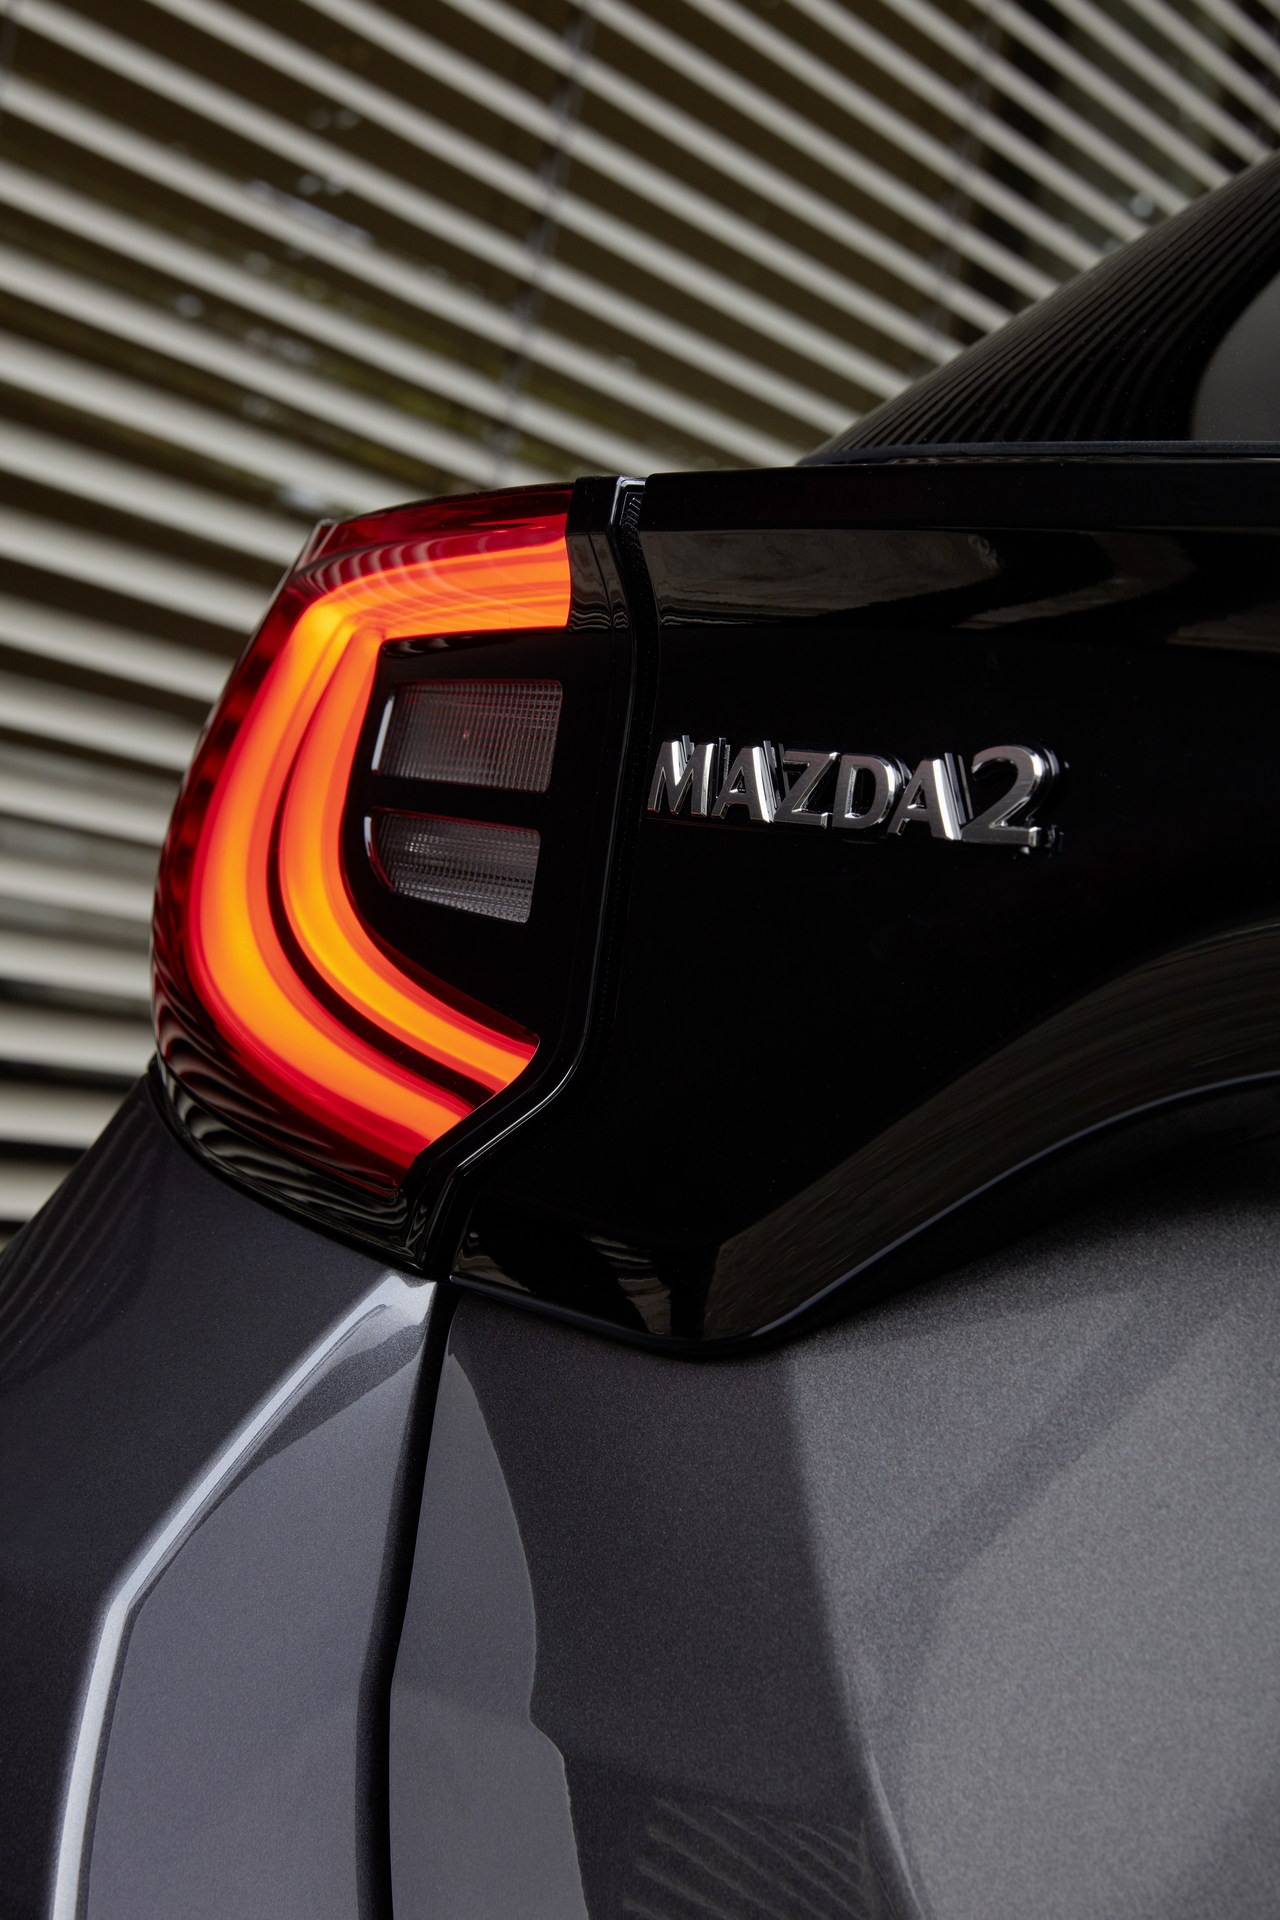 2022 Mazda2 Hybrid resim galerisi (08.12.2021)